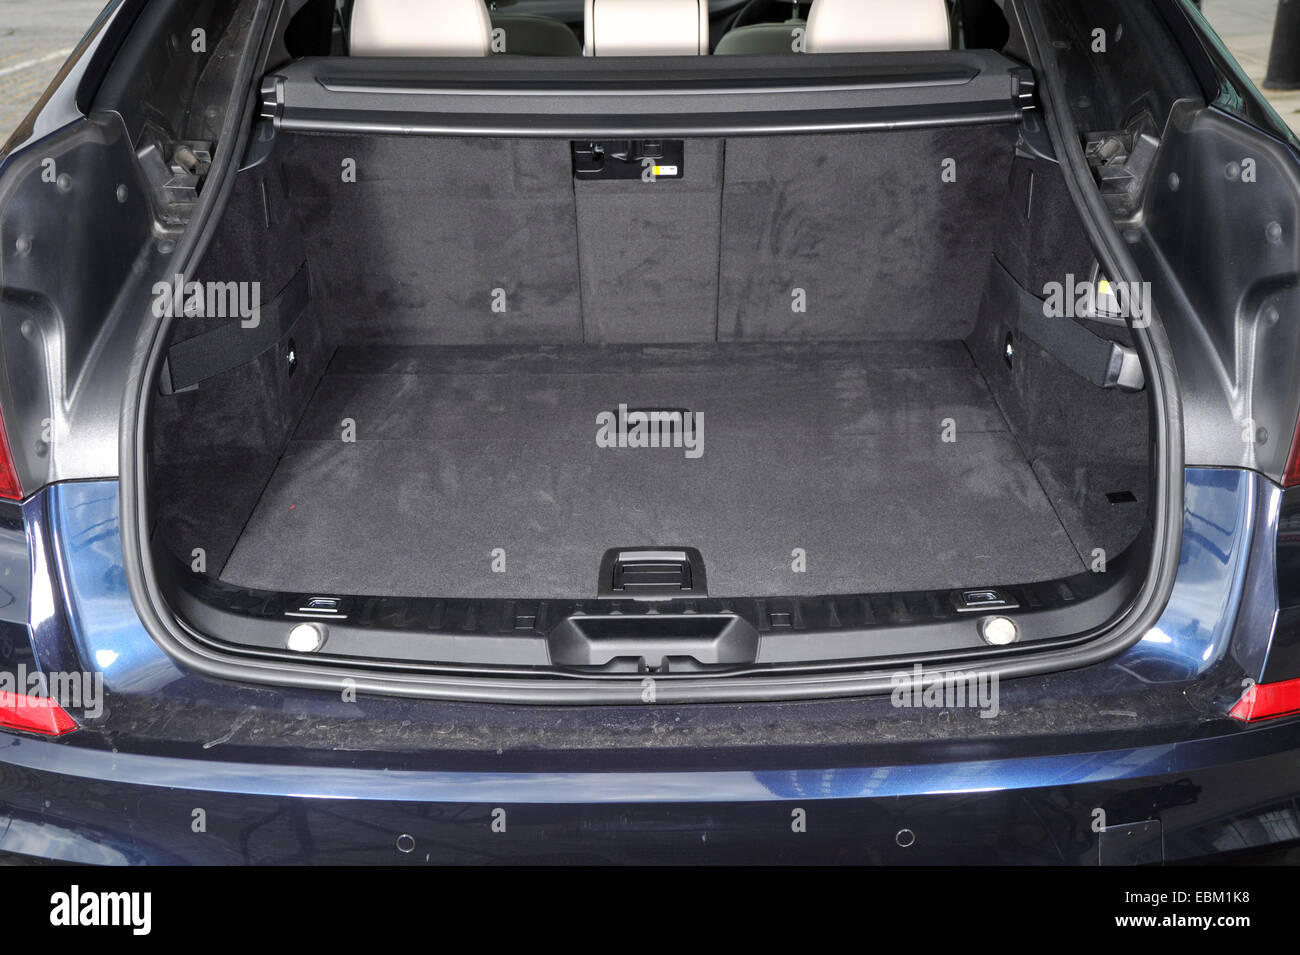 2013 BMW 5GT de luxe grand off road coupé à hayon de coffre Banque D'Images